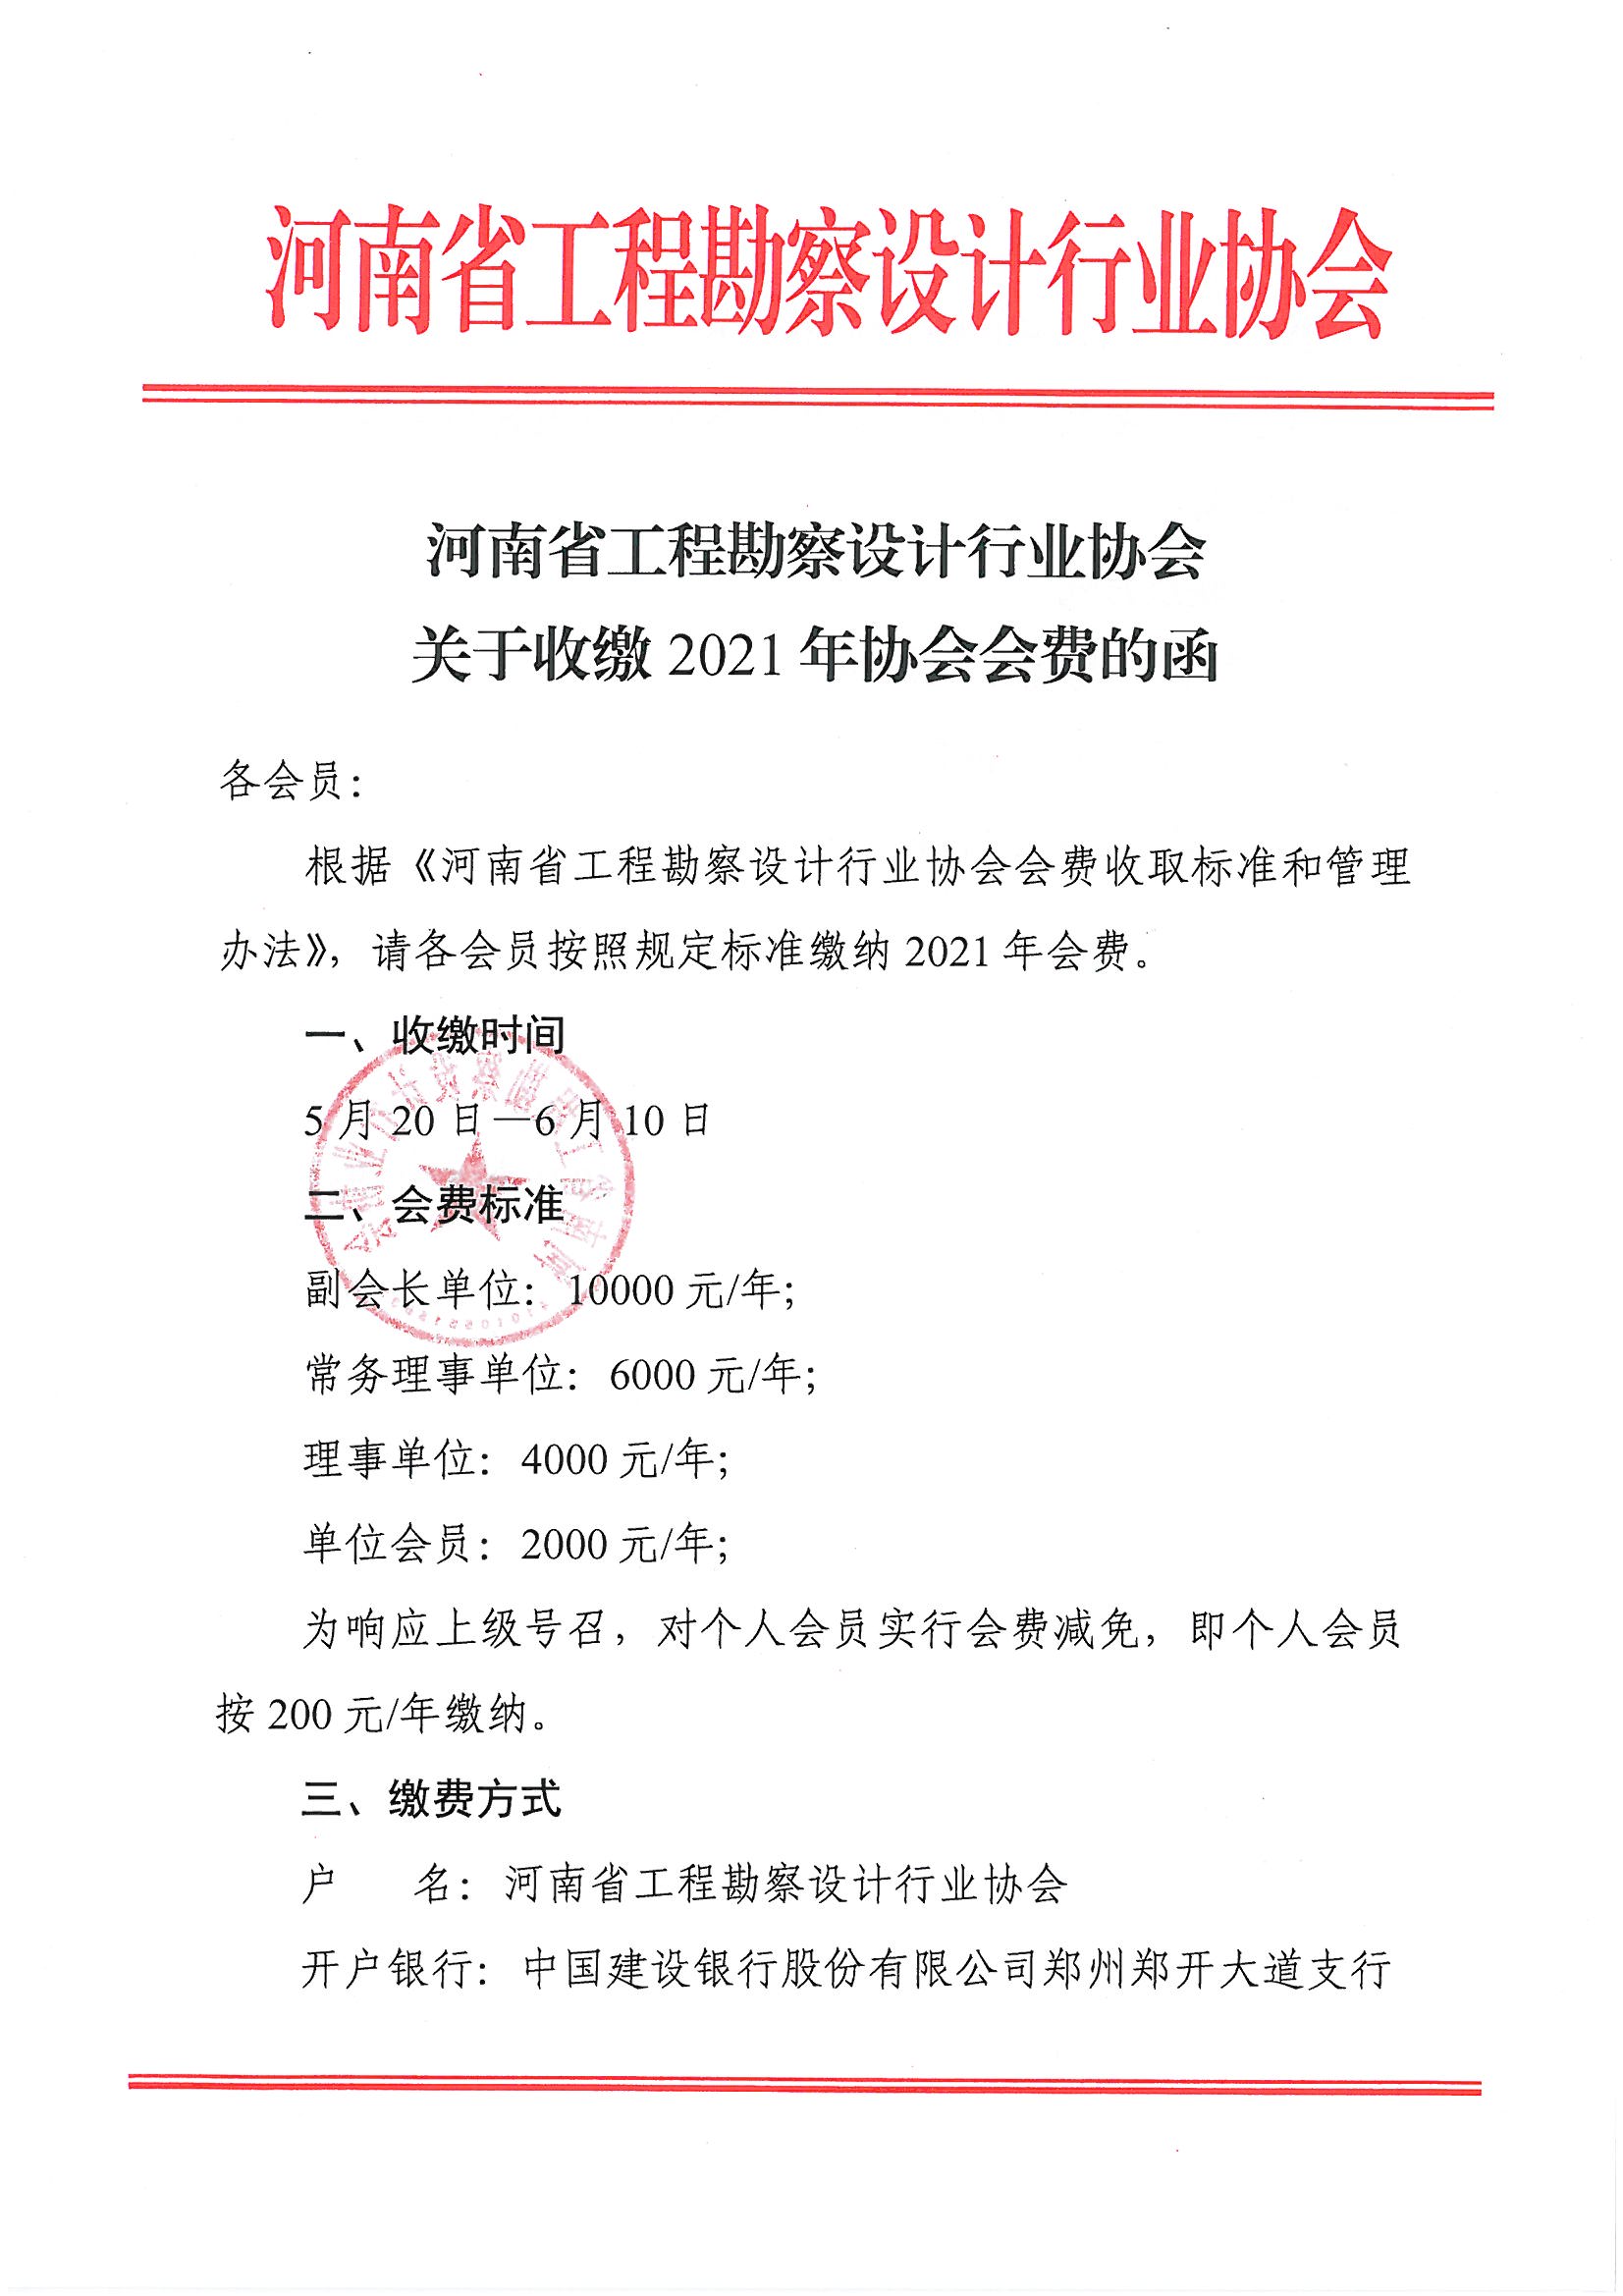 河南省工程勘察设计行业协会关于收缴2021年协会会费的函_页面_1.jpg